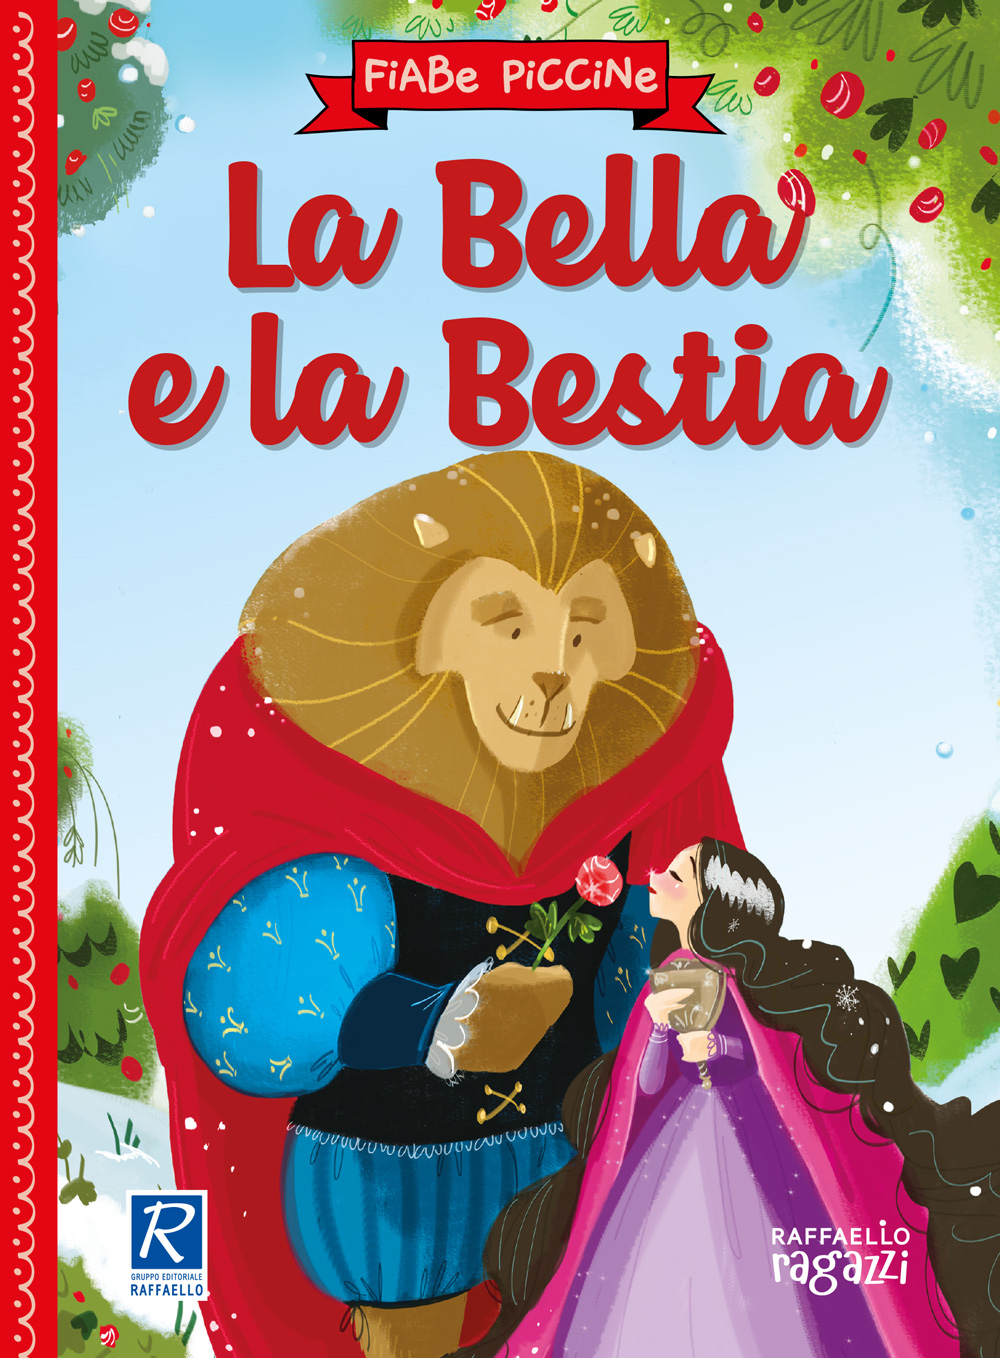 Fiabe Piccine -  La Bella e la Bestia Raffaello